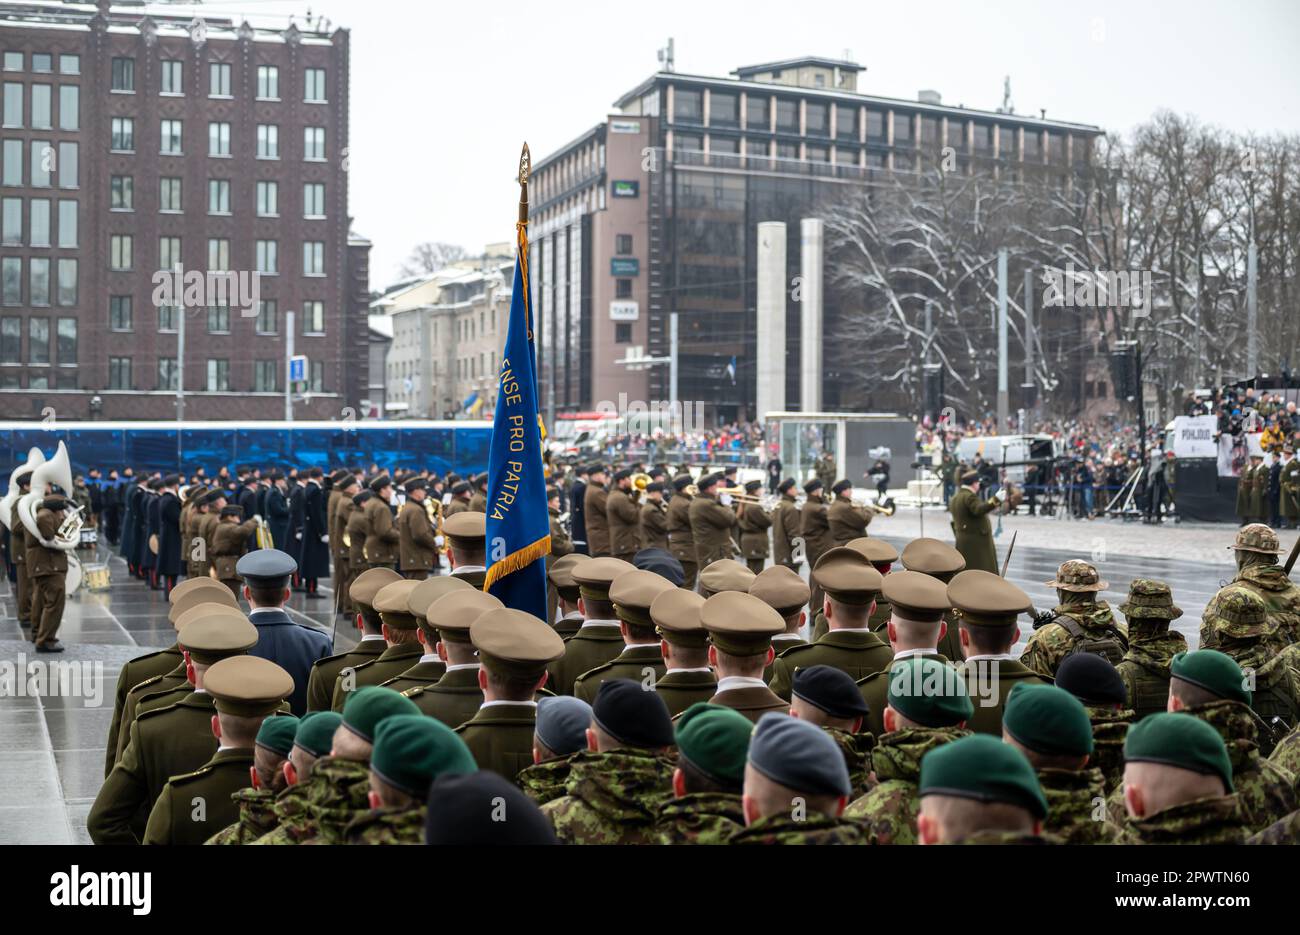 Les forces militaires estoniennes de différentes divisions se sont alignées sur la place principale pendant le jour de l'indépendance, éclipsées par la guerre en Ukraine Banque D'Images